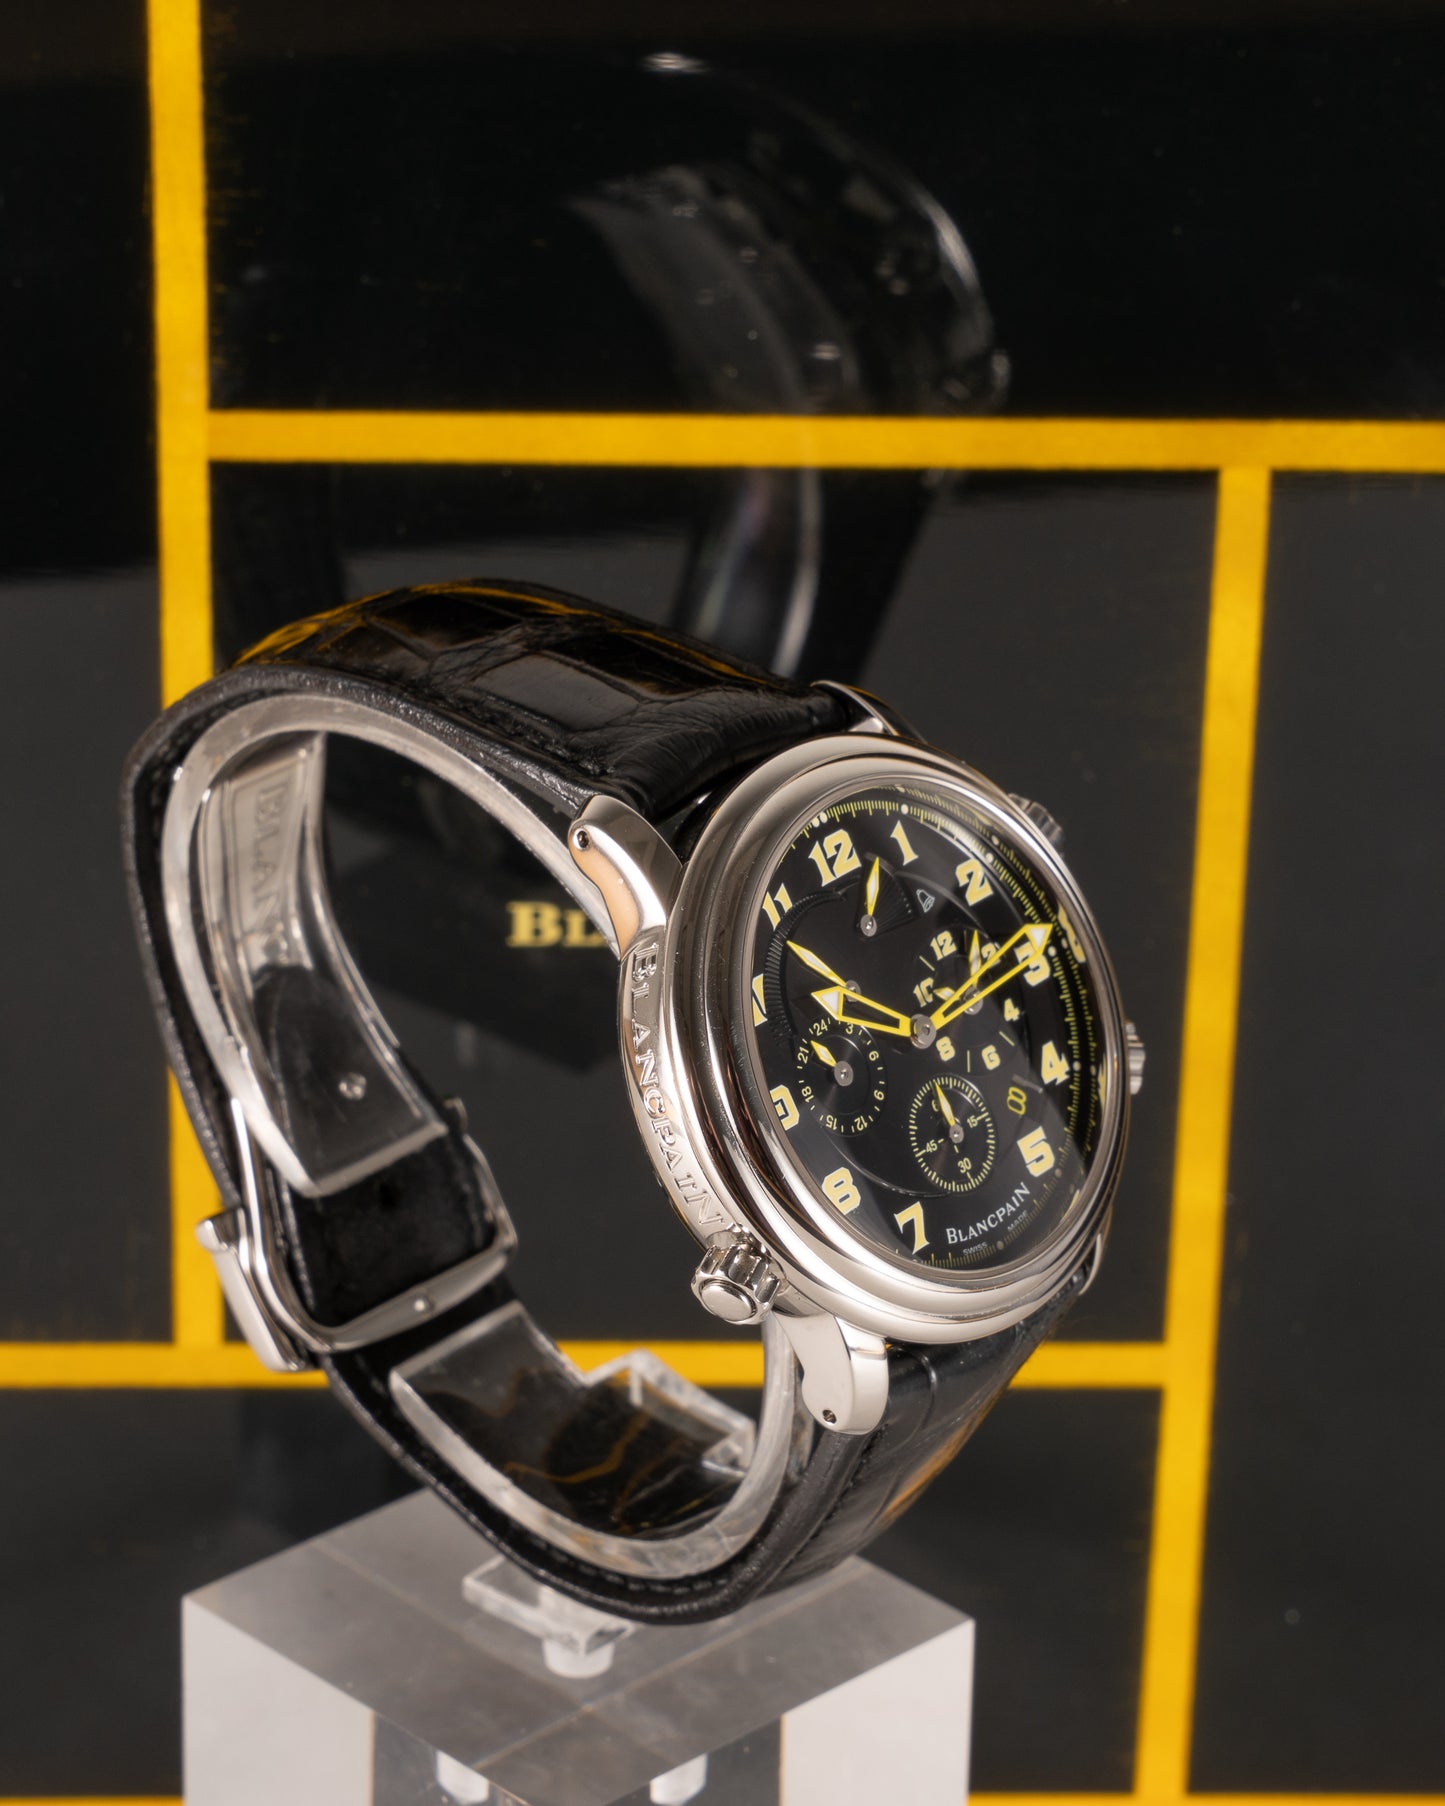 Blancpain Léman Réveil GMT Alarm 2041 B-1130M Black and Yellow 2011 40mm